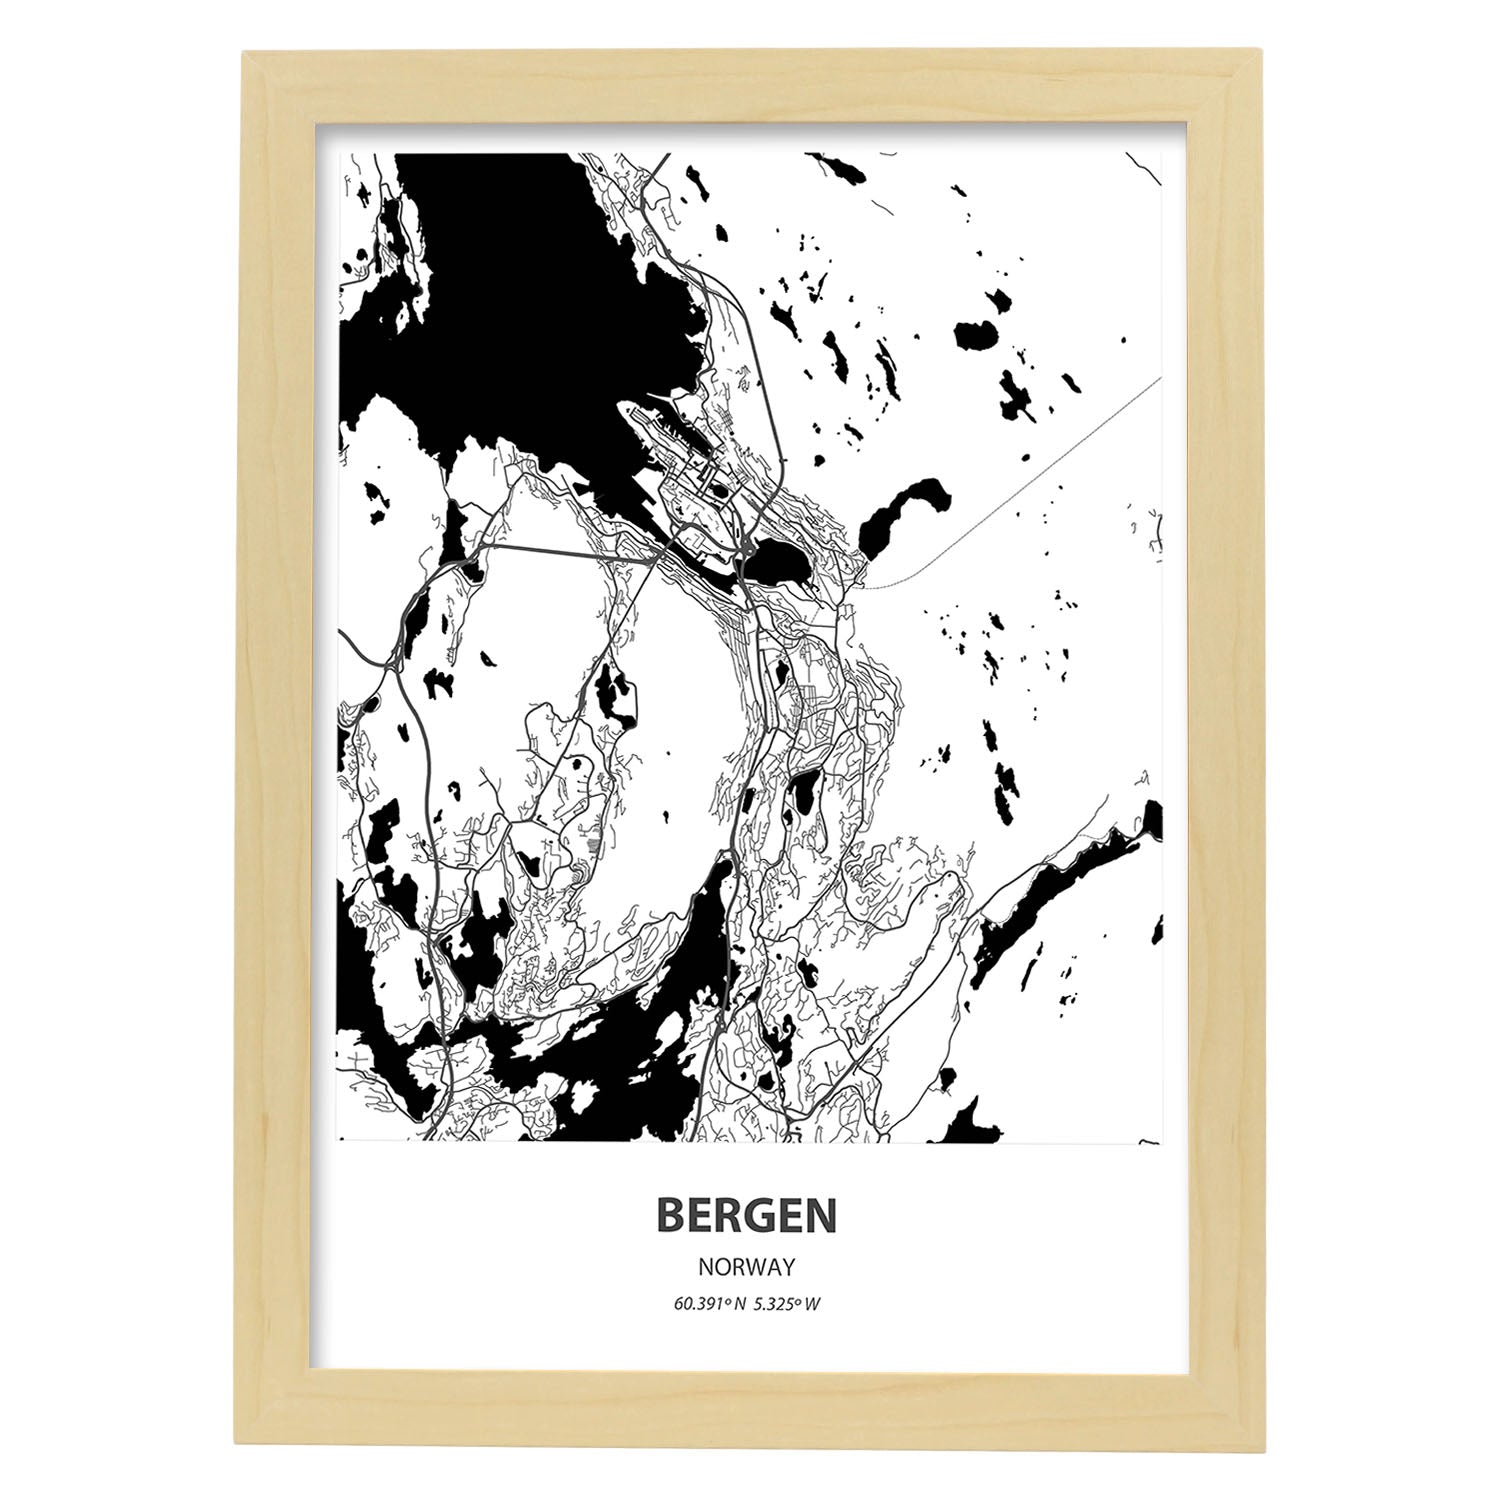 Poster con mapa de Bergen - Noruega. Láminas de ciudades del norte de Europa con mares y ríos en color negro.-Artwork-Nacnic-A4-Marco Madera clara-Nacnic Estudio SL